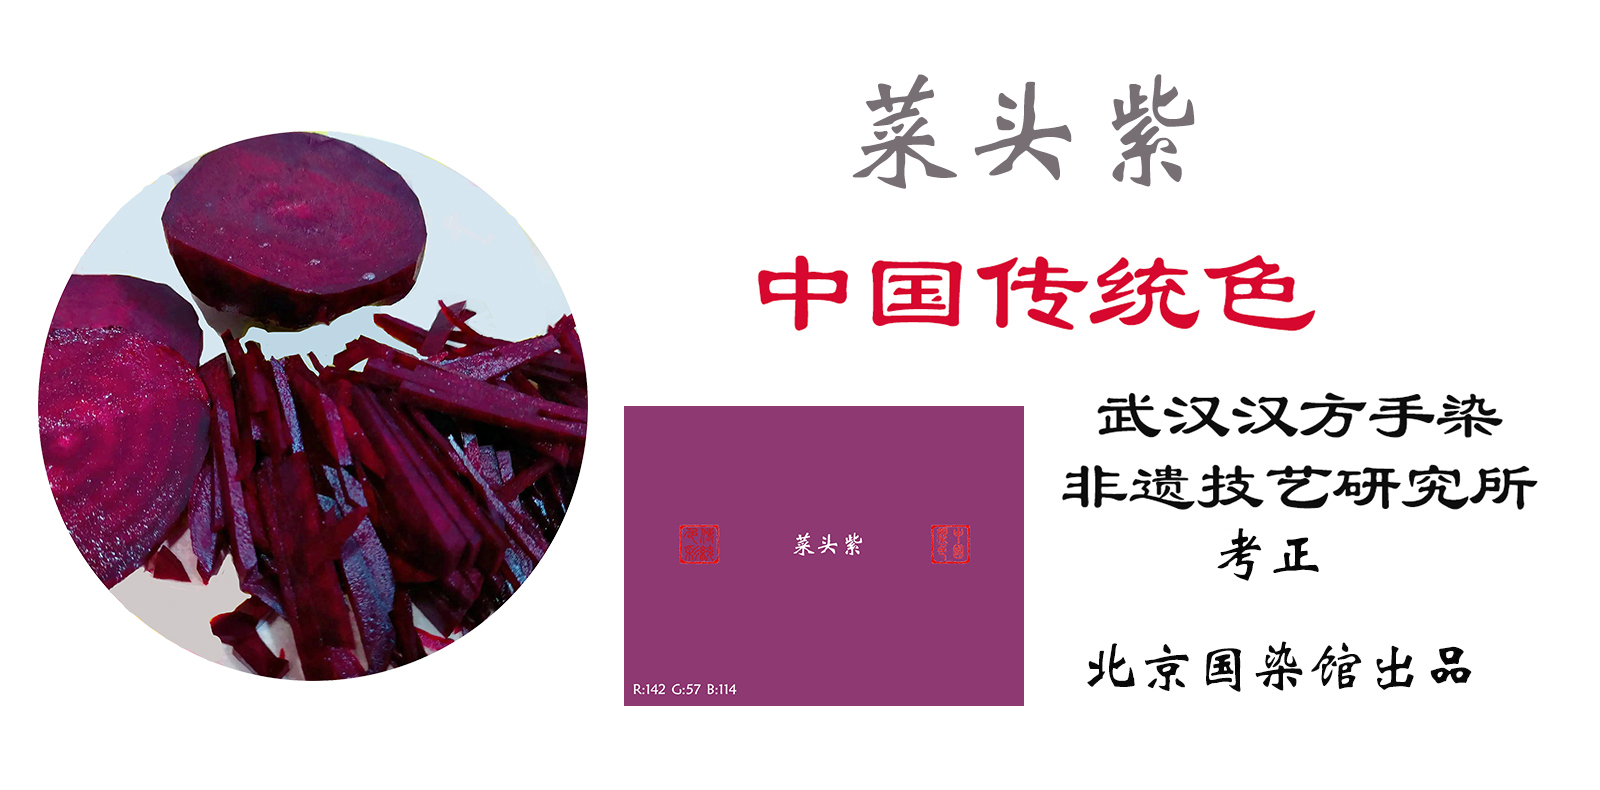 【食譜】芝麻炒紫菜:www.ytower.com.tw